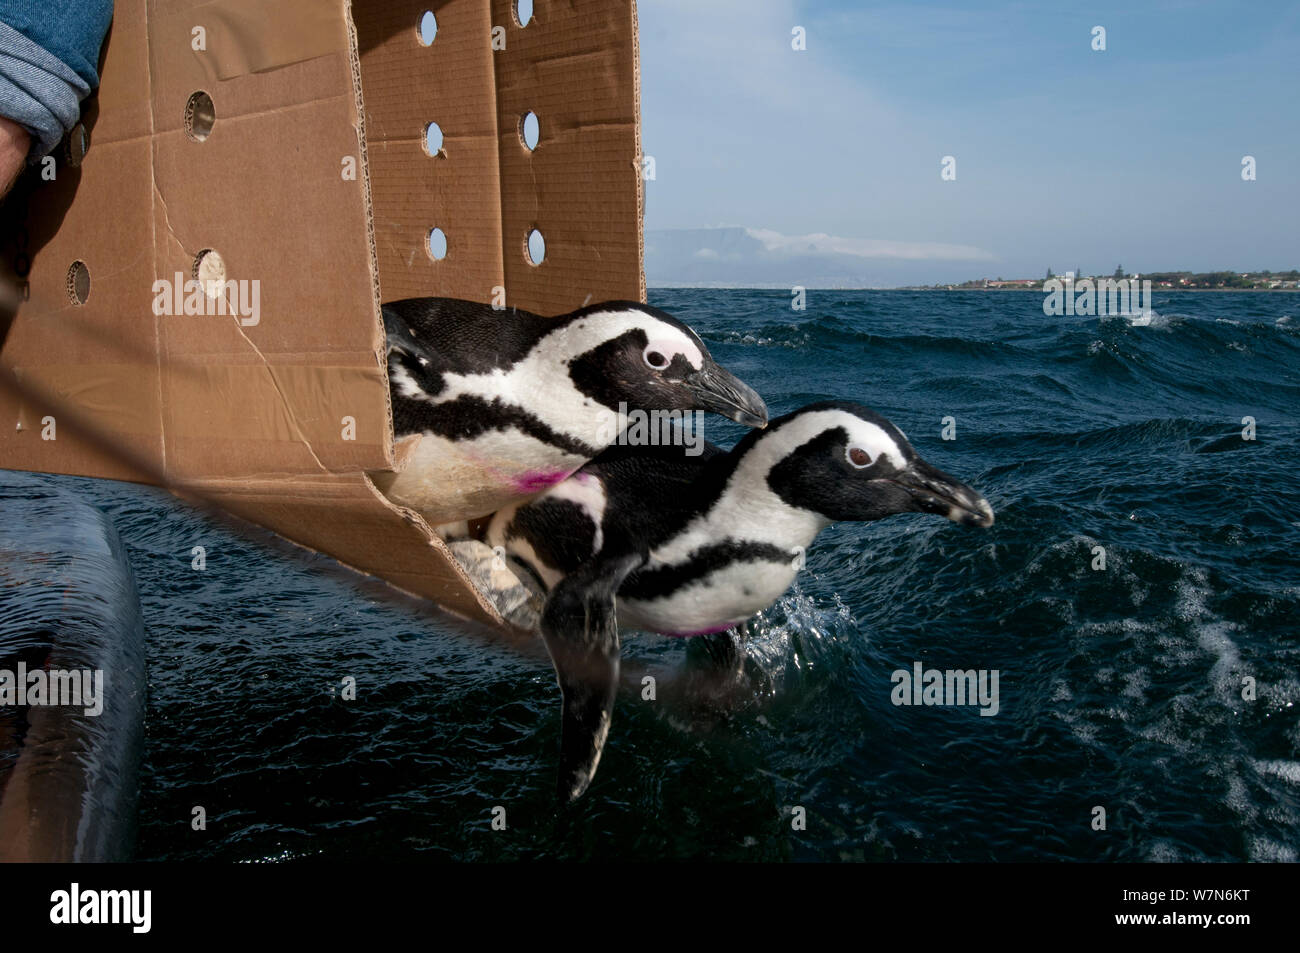 Black footed Penguins (Spheniscus demersus) auf See in der Nähe von Robben Island, Table Bay nach der Rehabilitation an der Südafrikanischen Stiftung für die Erhaltung der Küstenvögel (SANCCOB) Kapstadt, Südafrika 2011 freigegeben sind Stockfoto